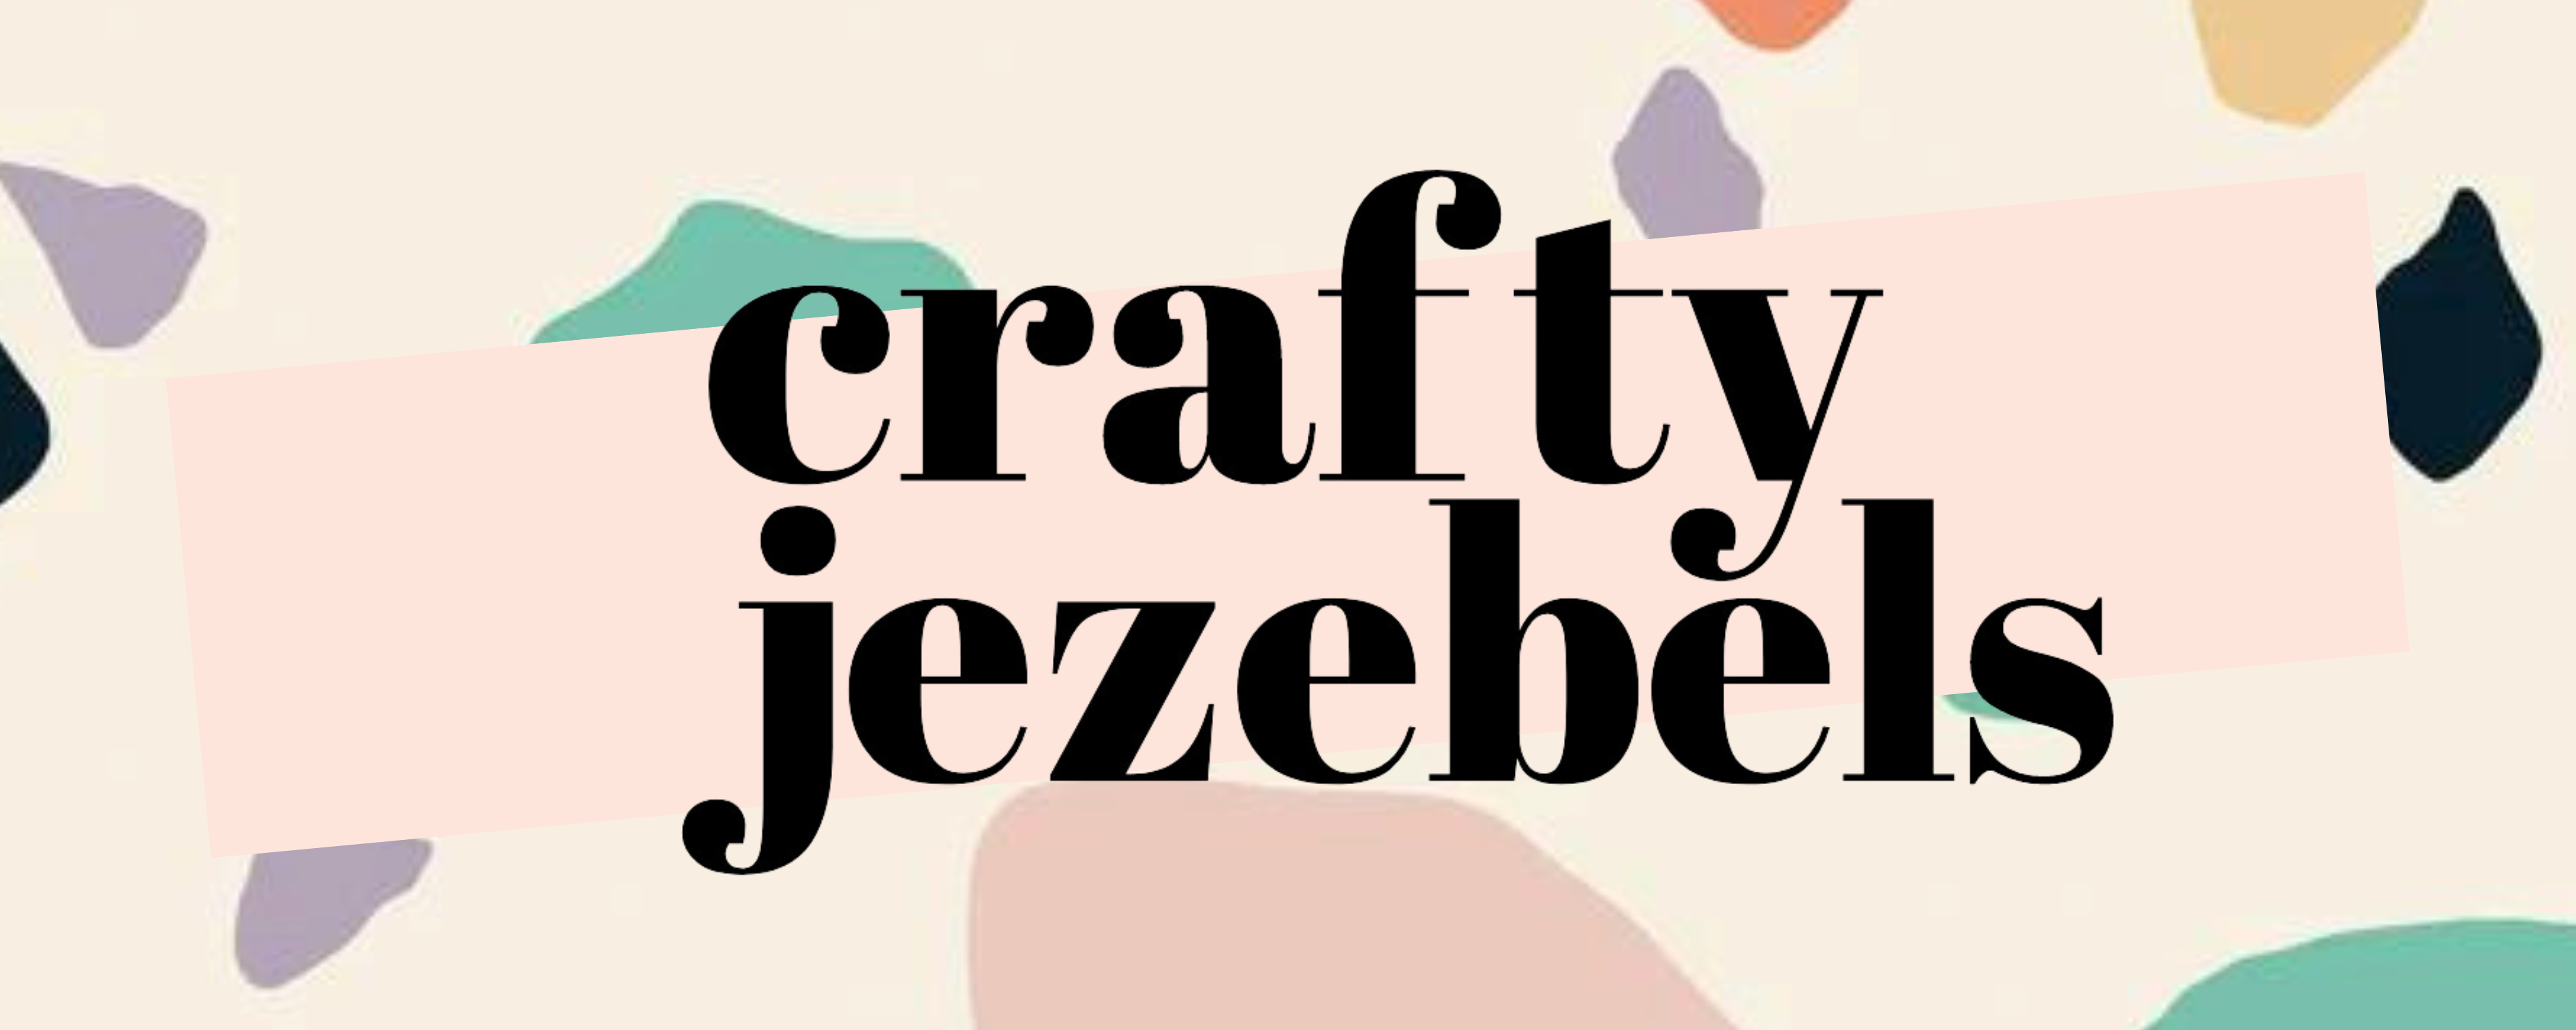 Crafty Jezebels